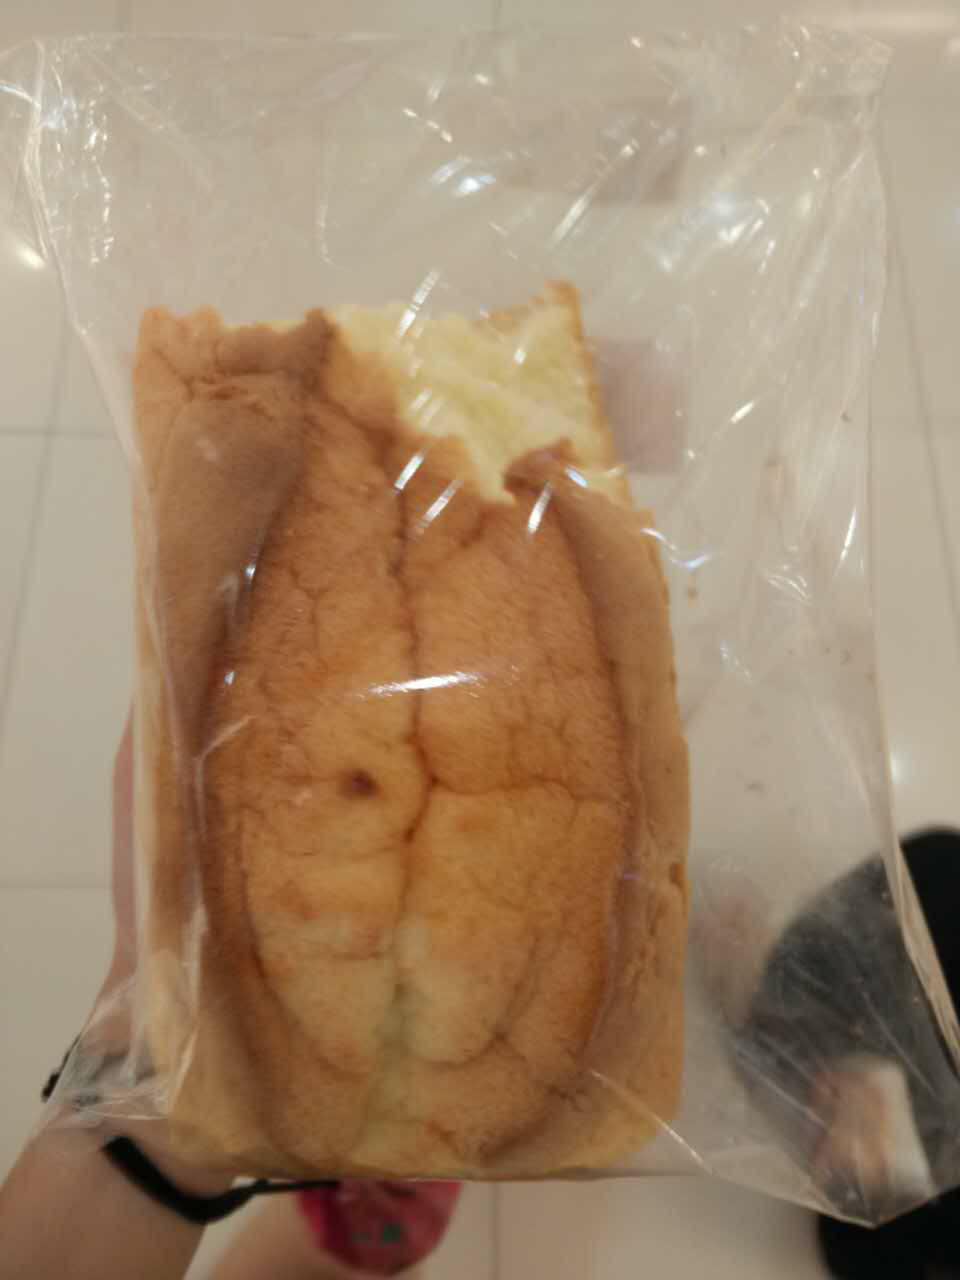 这种面包在深圳哪个区的超市有卖,叫什么包? 